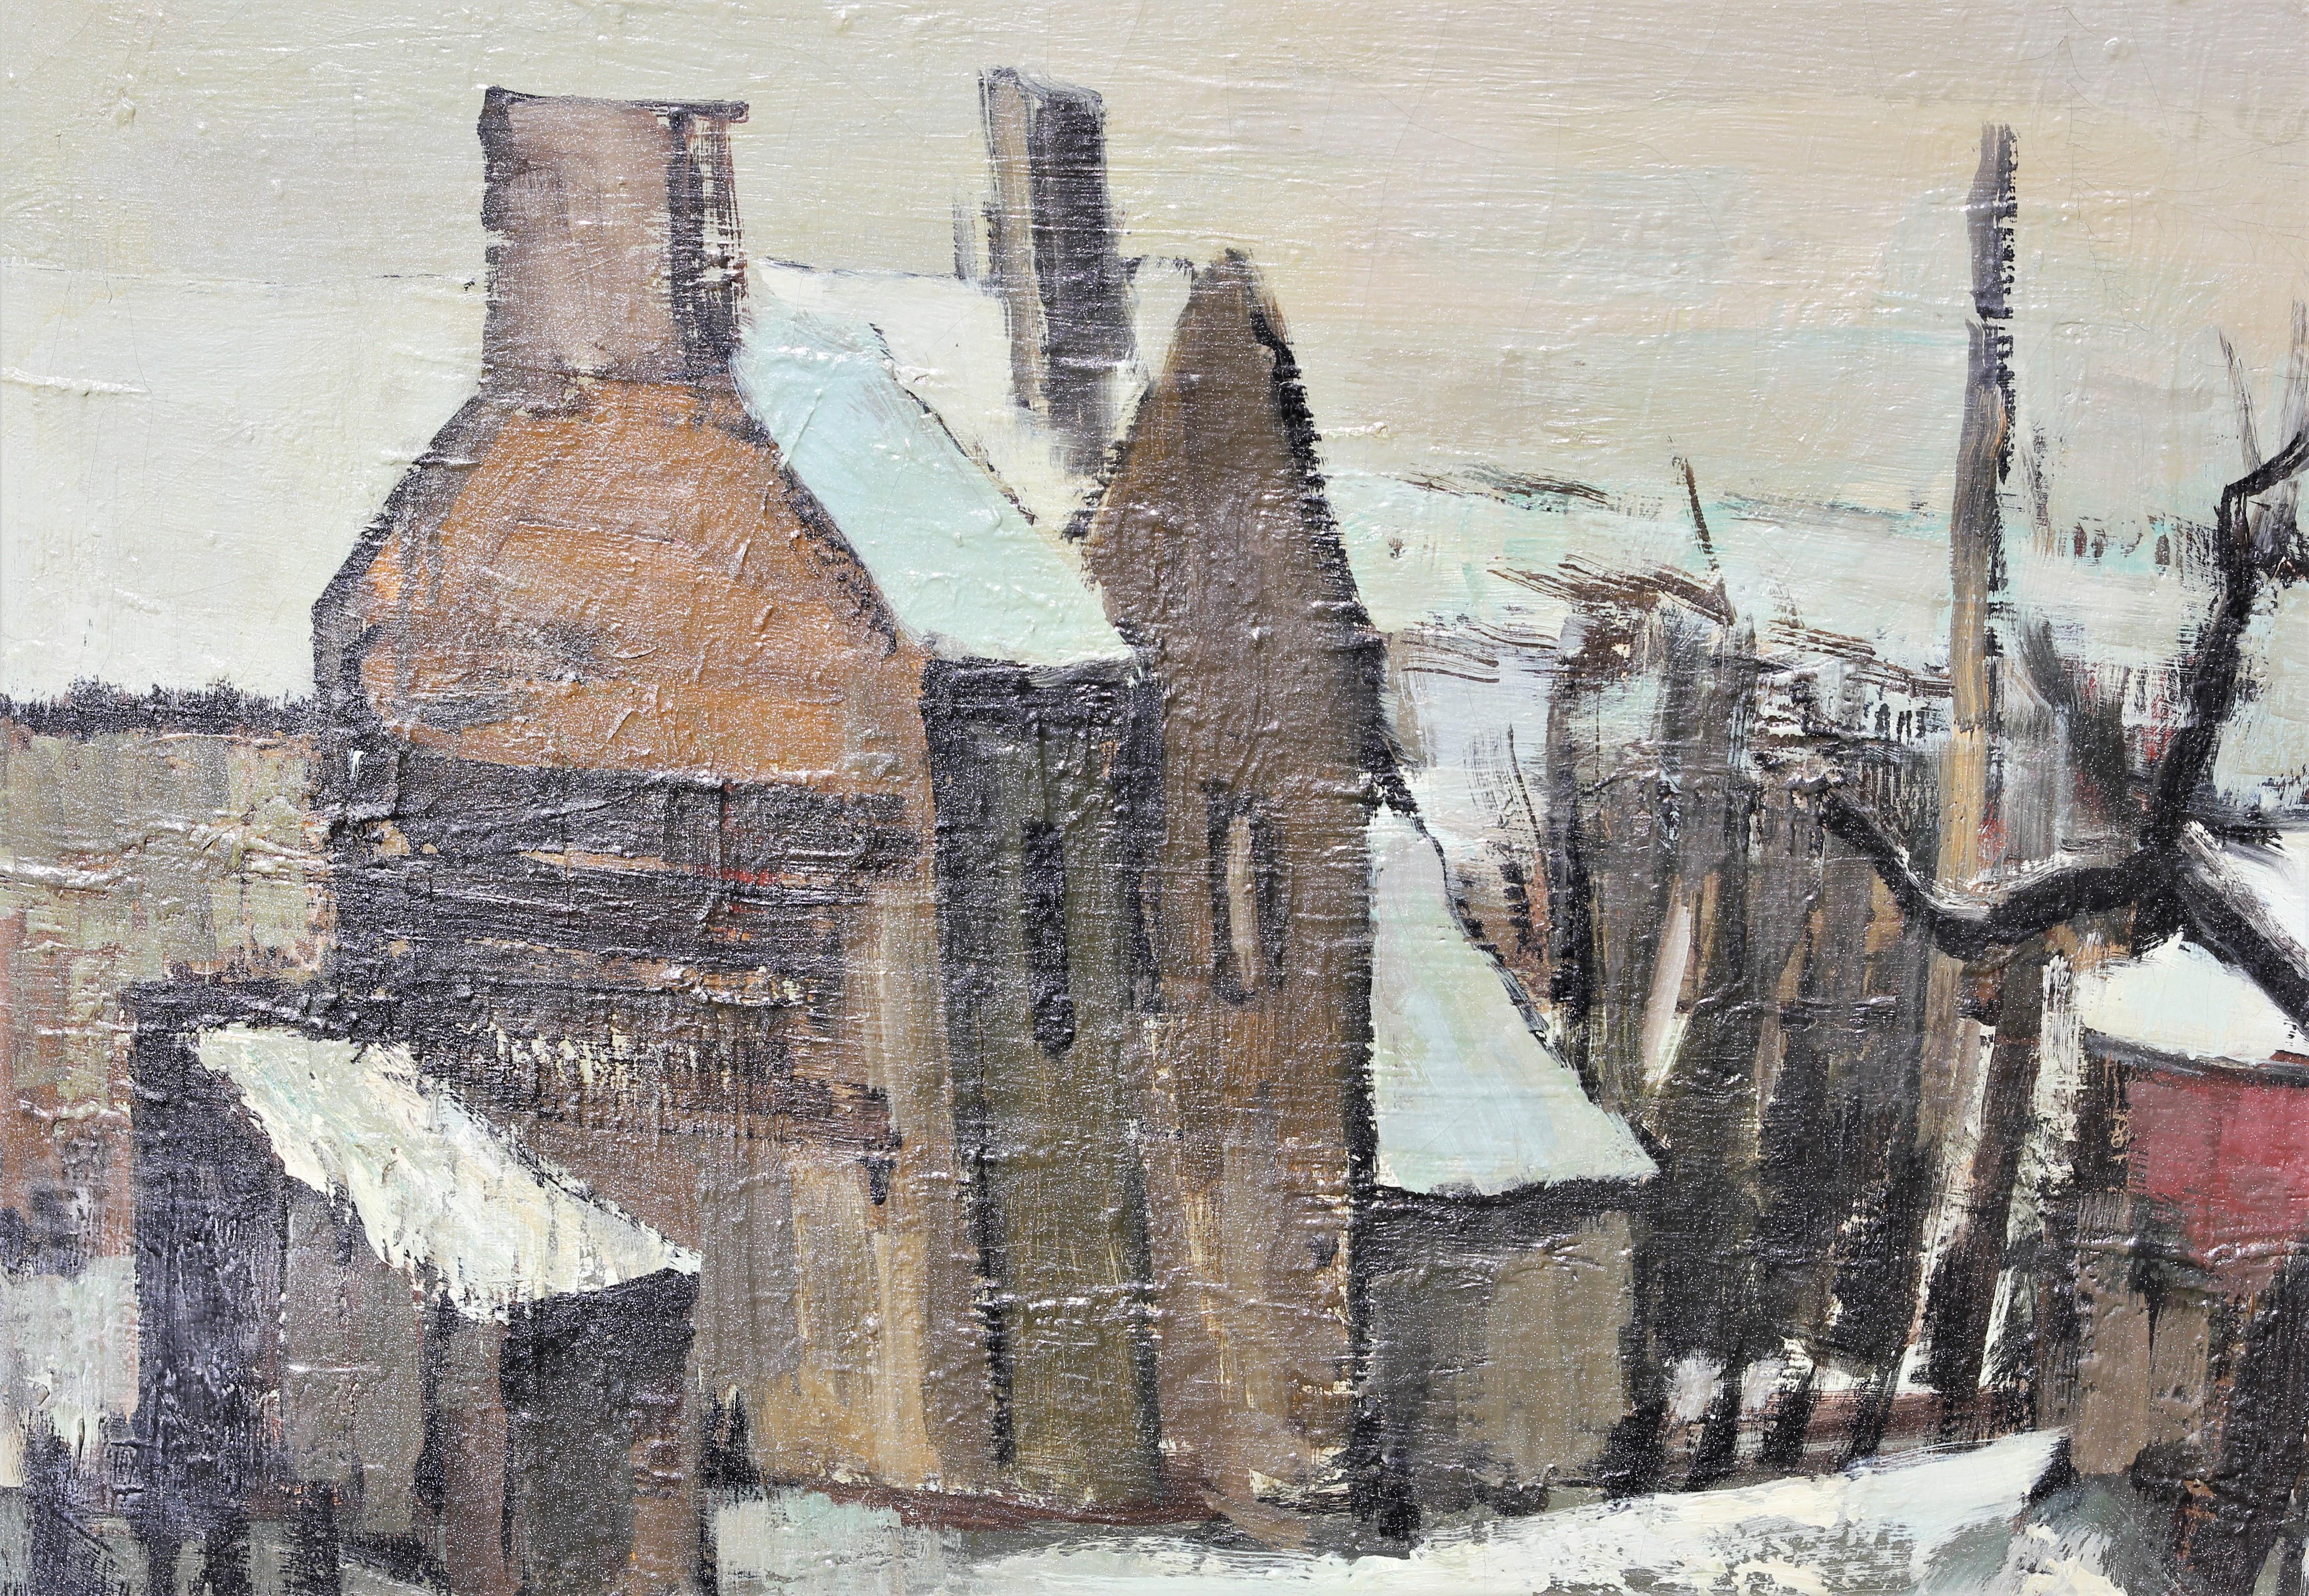 Peinture de paysage pastoral de style impressionniste de l'artiste français André Lemaitre. L'œuvre représente un petit village de campagne recouvert d'une couche de neige. Signé par l'artiste dans le coin inférieur droit au recto ainsi que signé,